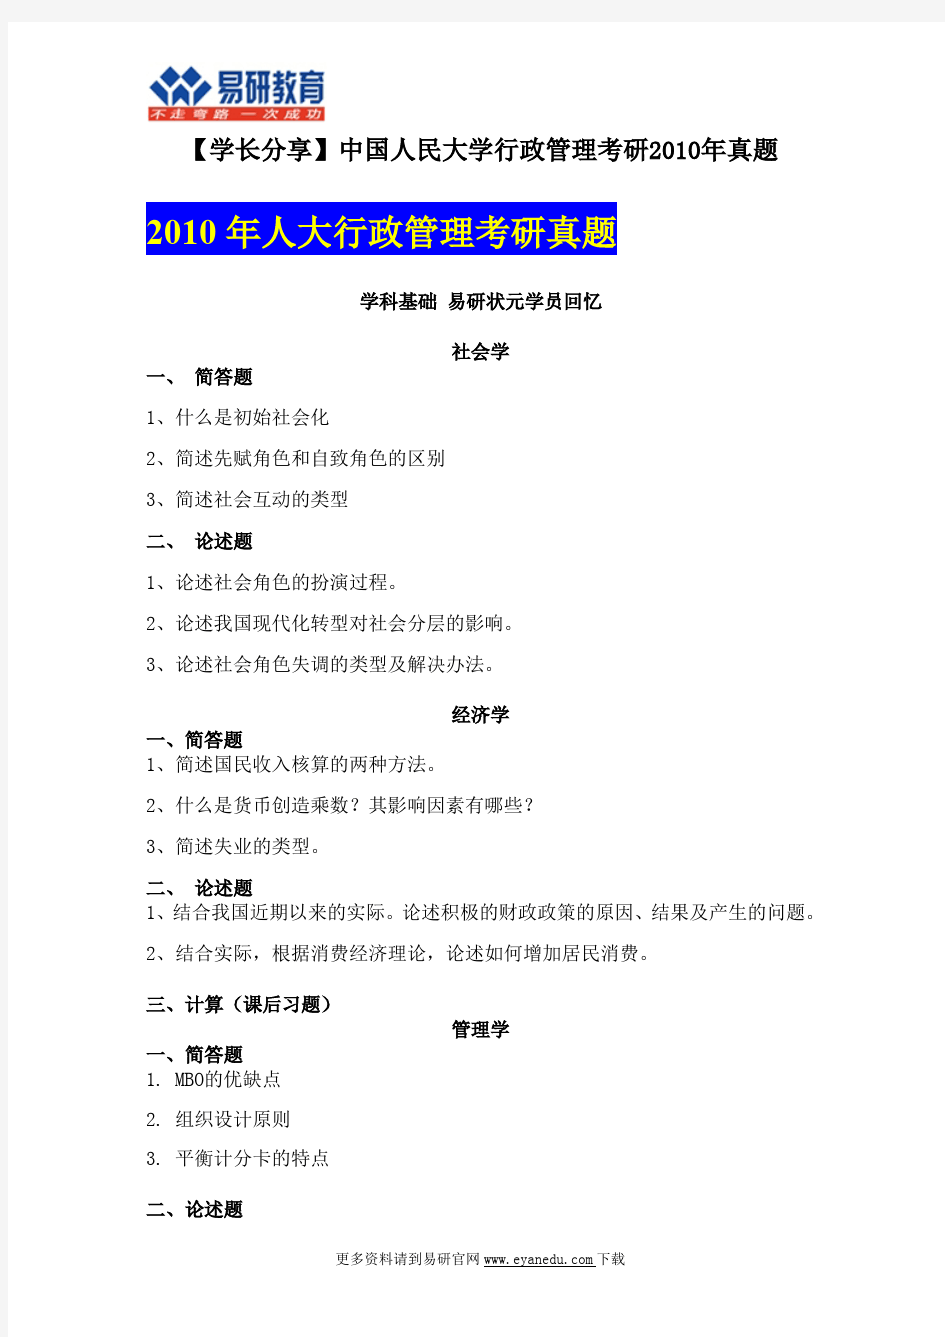 【人大行管考研状元分享】中国人民大学行政管理考研2010年考试真题